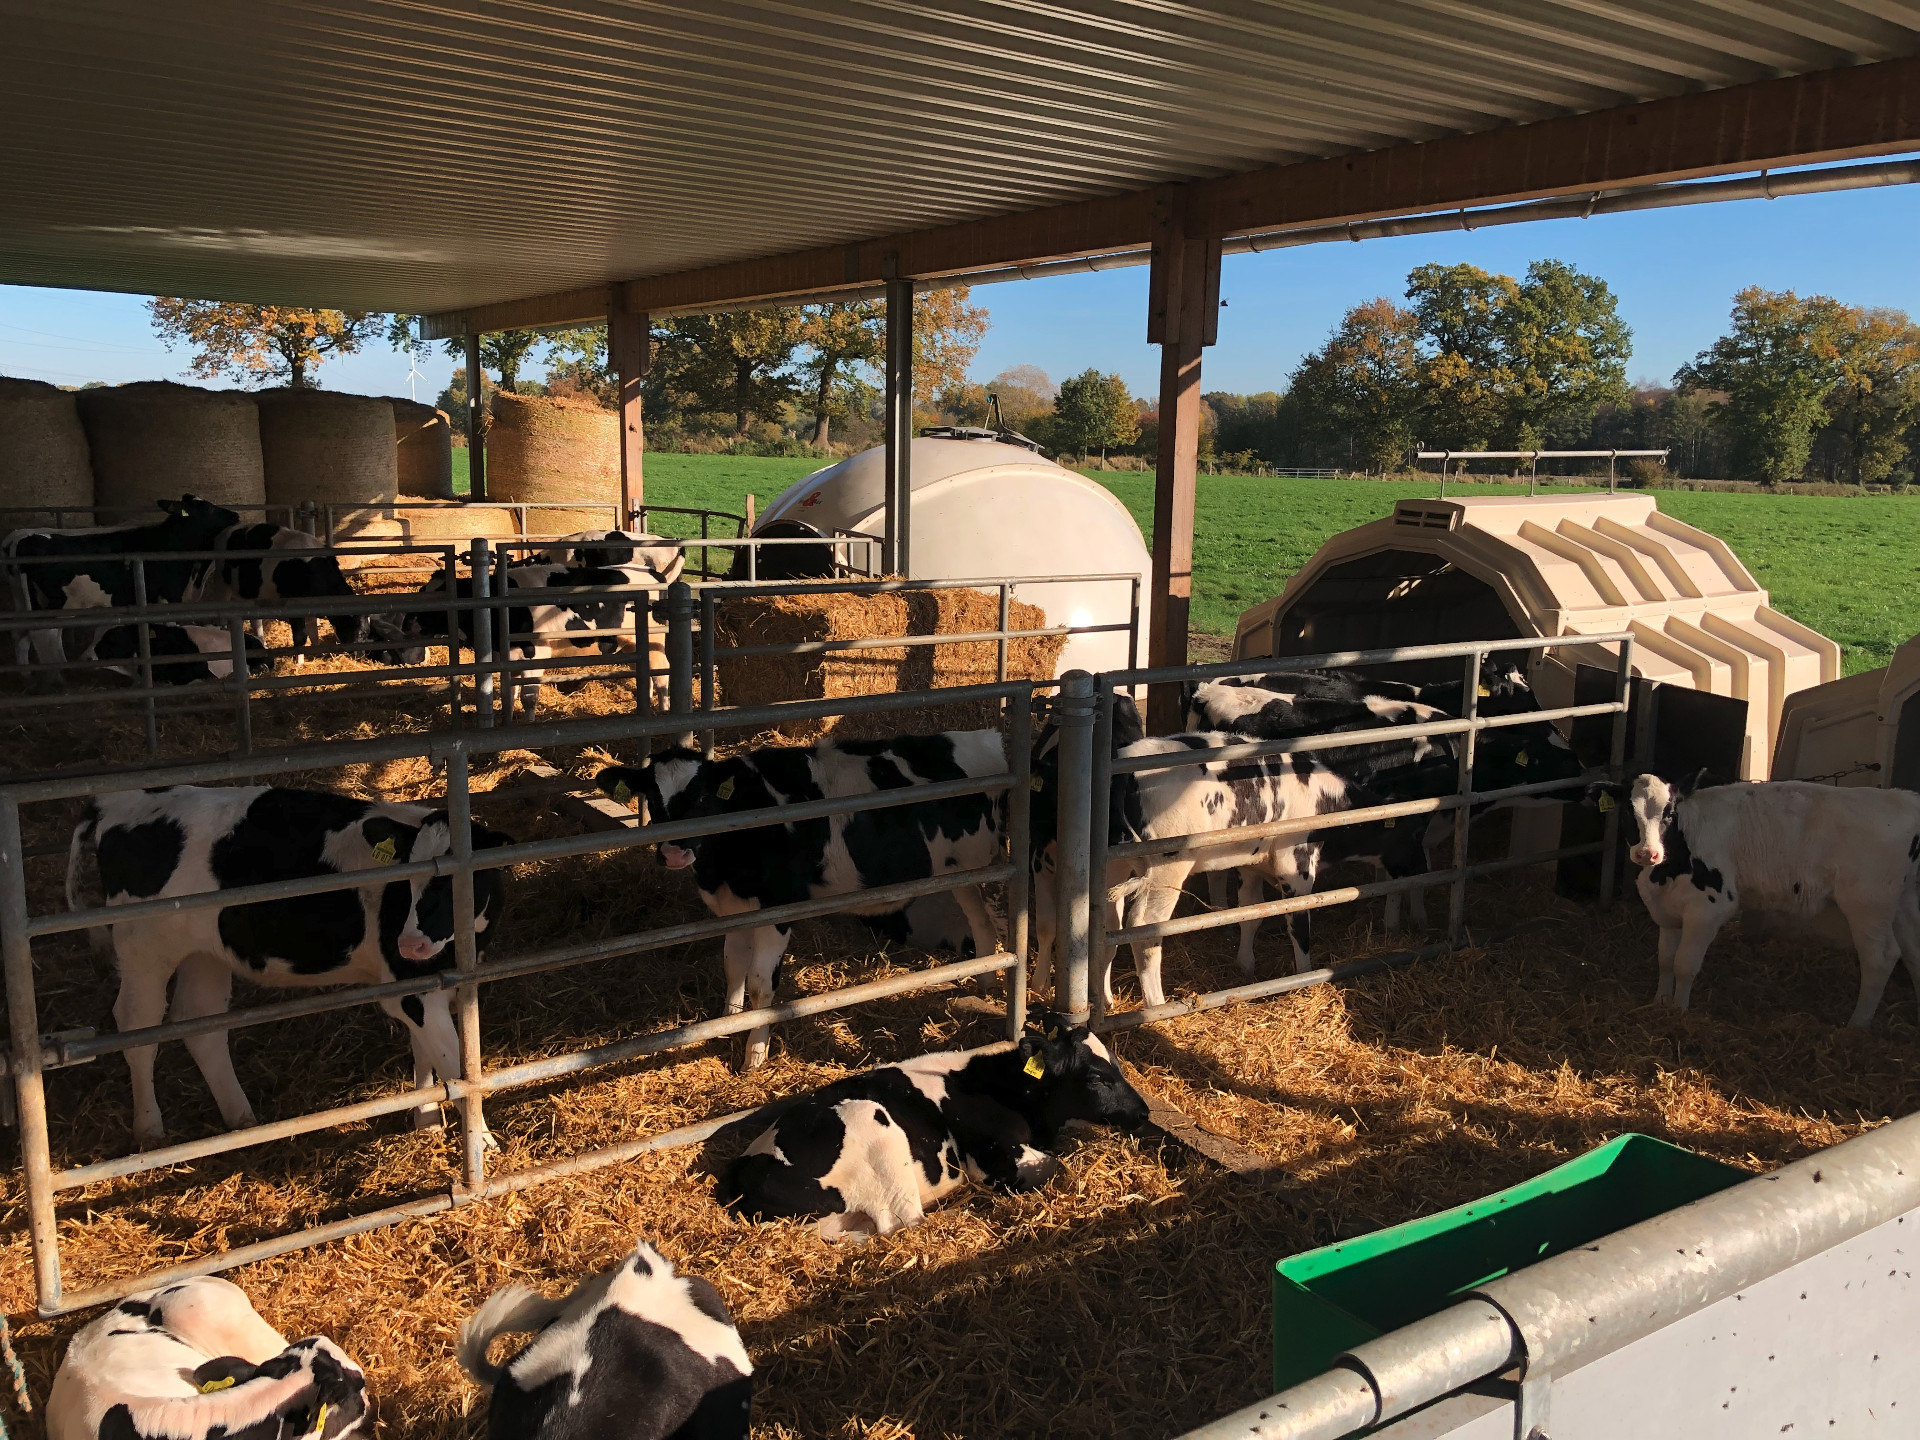 I vitelli decidono dove stare nella stalla a seconda delle condizioni climatiche: nell'igloo o all'aperto.